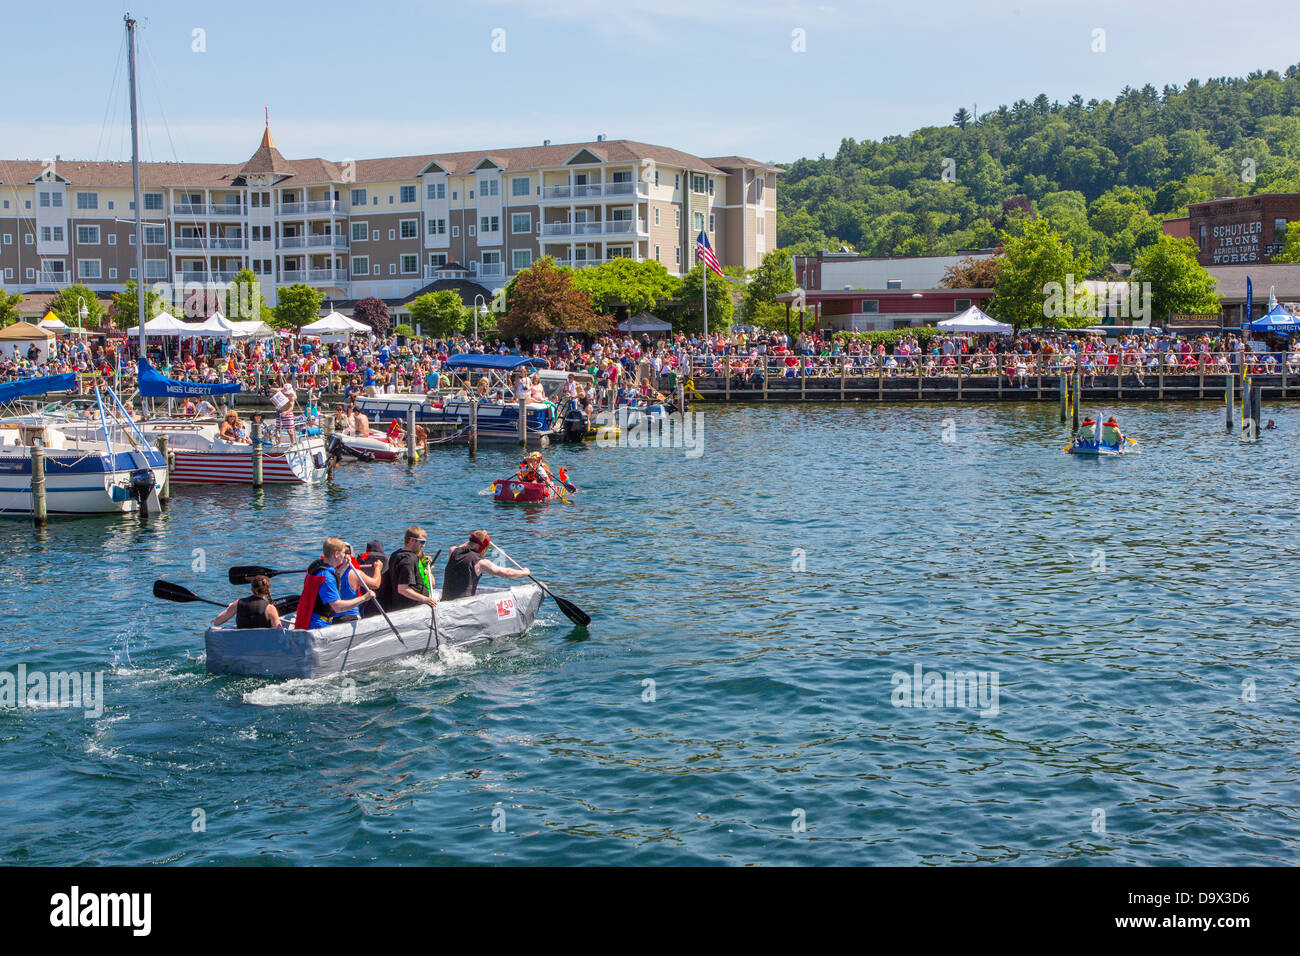 20th Annual Watkins Glen Waterfront Festival & Cardboard Boat Regatta held in the harbor of Watkins Glen New York Stock Photo